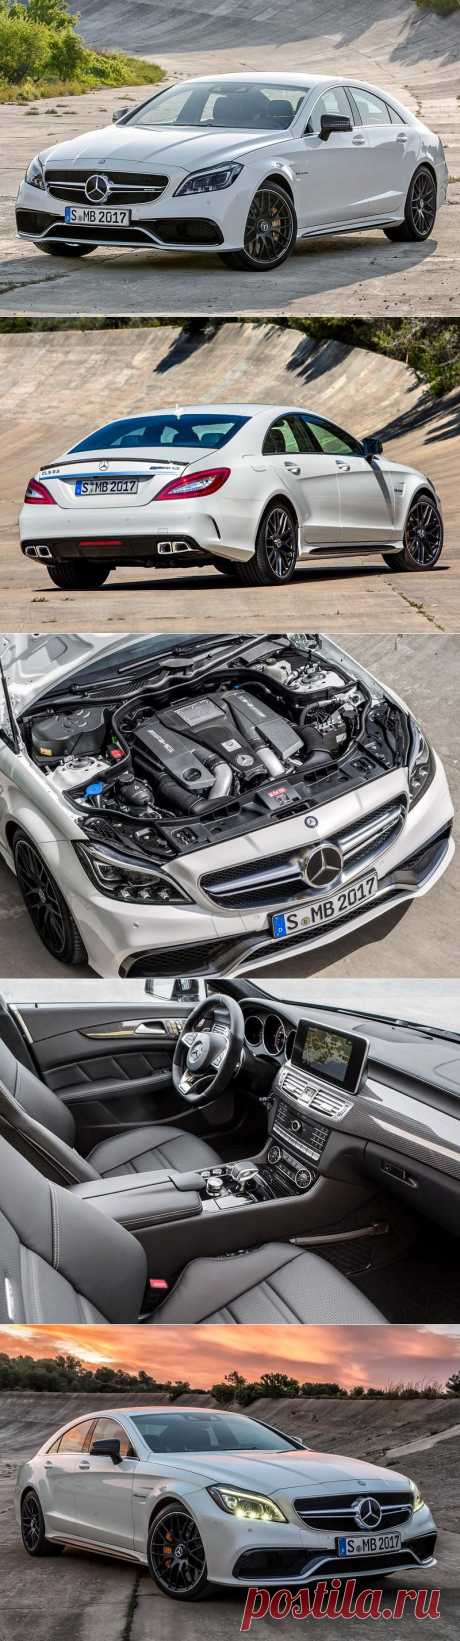 2015 Mercedes-Benz CLS 63 AMG S-Model 4Matic (C218) — Воротила